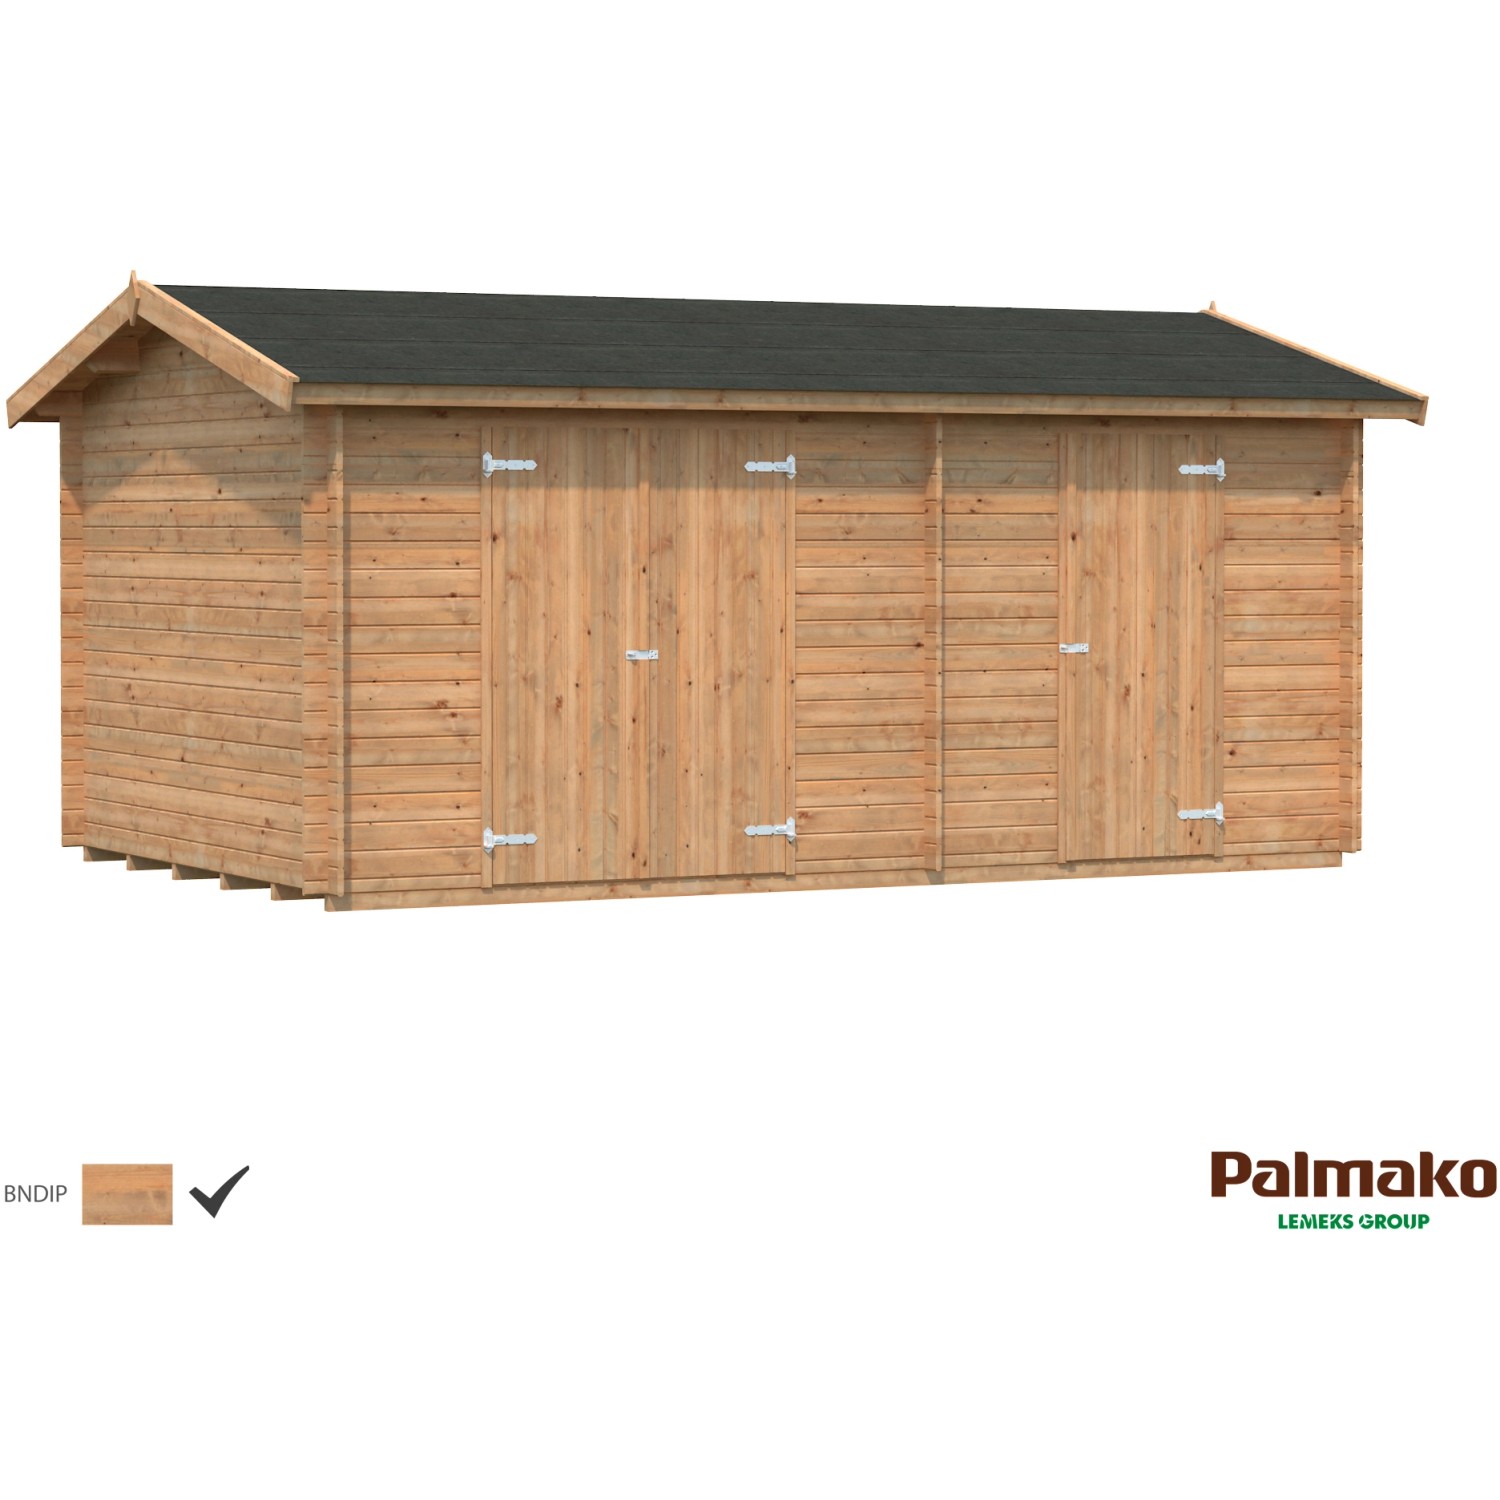 Palmako Jari Holz-Gartenhaus Braun Satteldach Tauchgrundiert 520 cm x 300 cm von Palmako